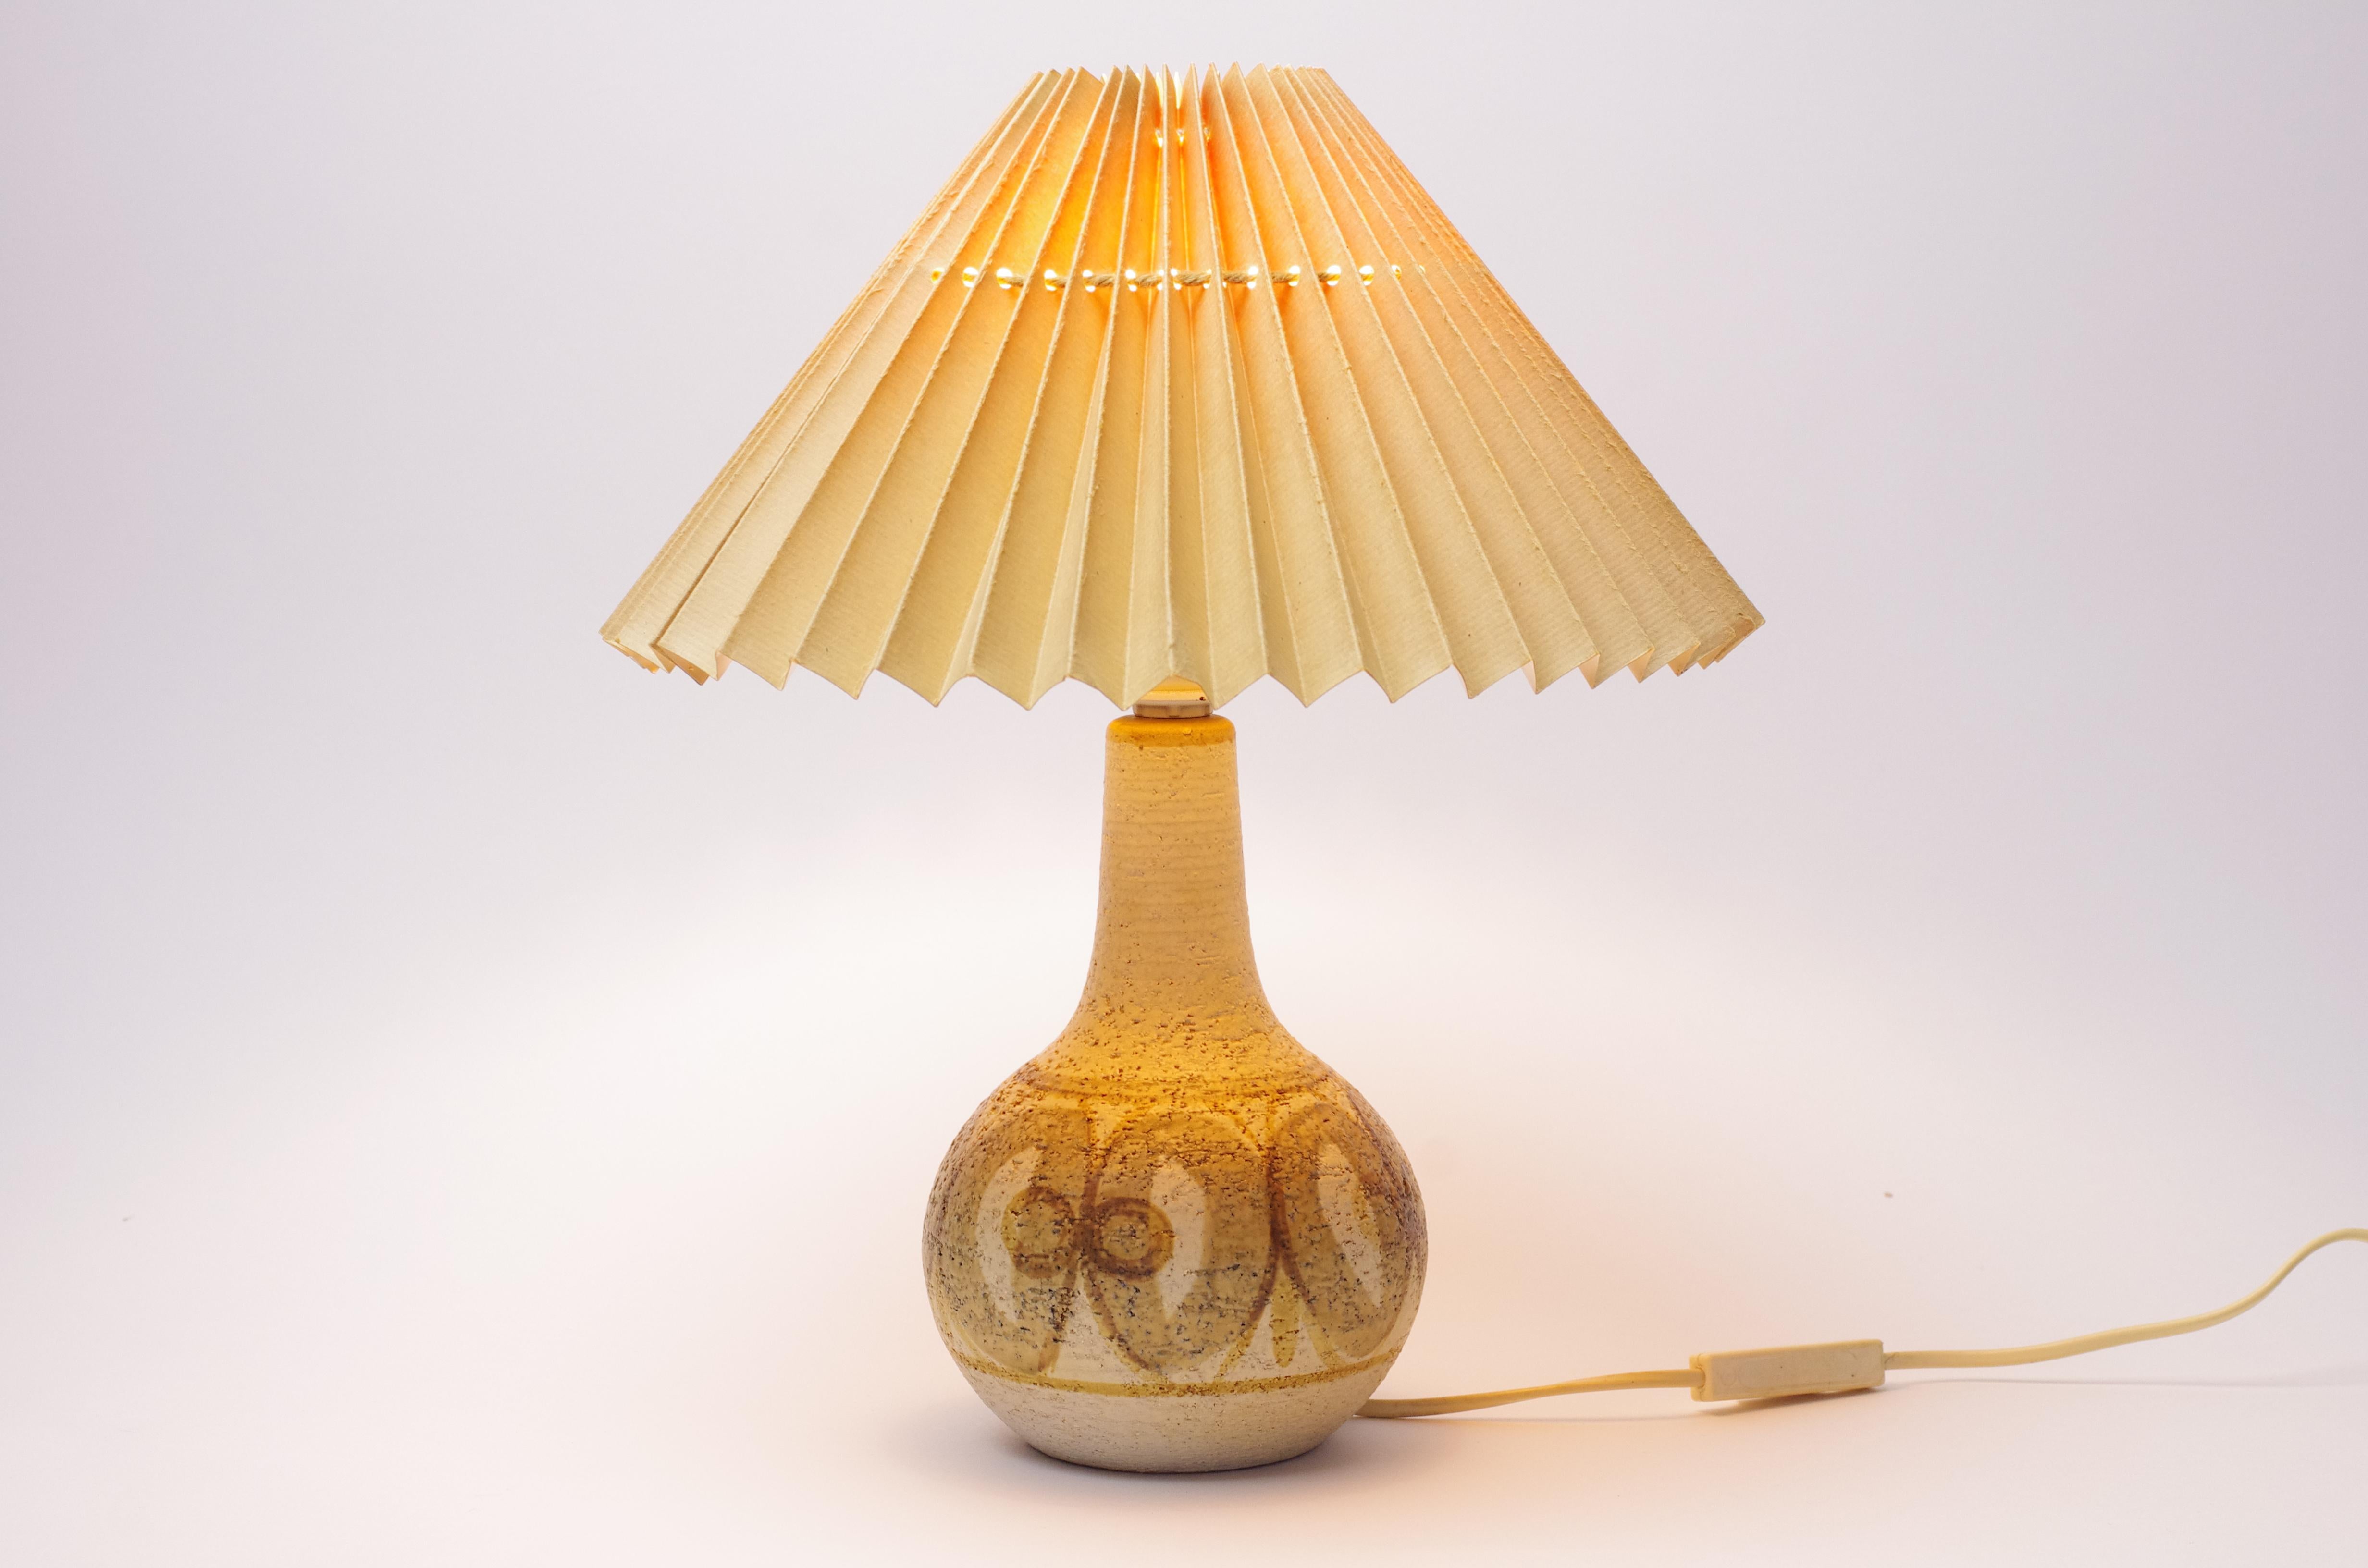 Description du produit :
Cette lampe a été conçue par Noomi Backhausen pour l'entreprise danoise Søholm. Noomi Backhausen, qui a reçu un prix de design danois et suédois en 1985 et 1993 respectivement, a surtout conçu des plaques murales, des vases